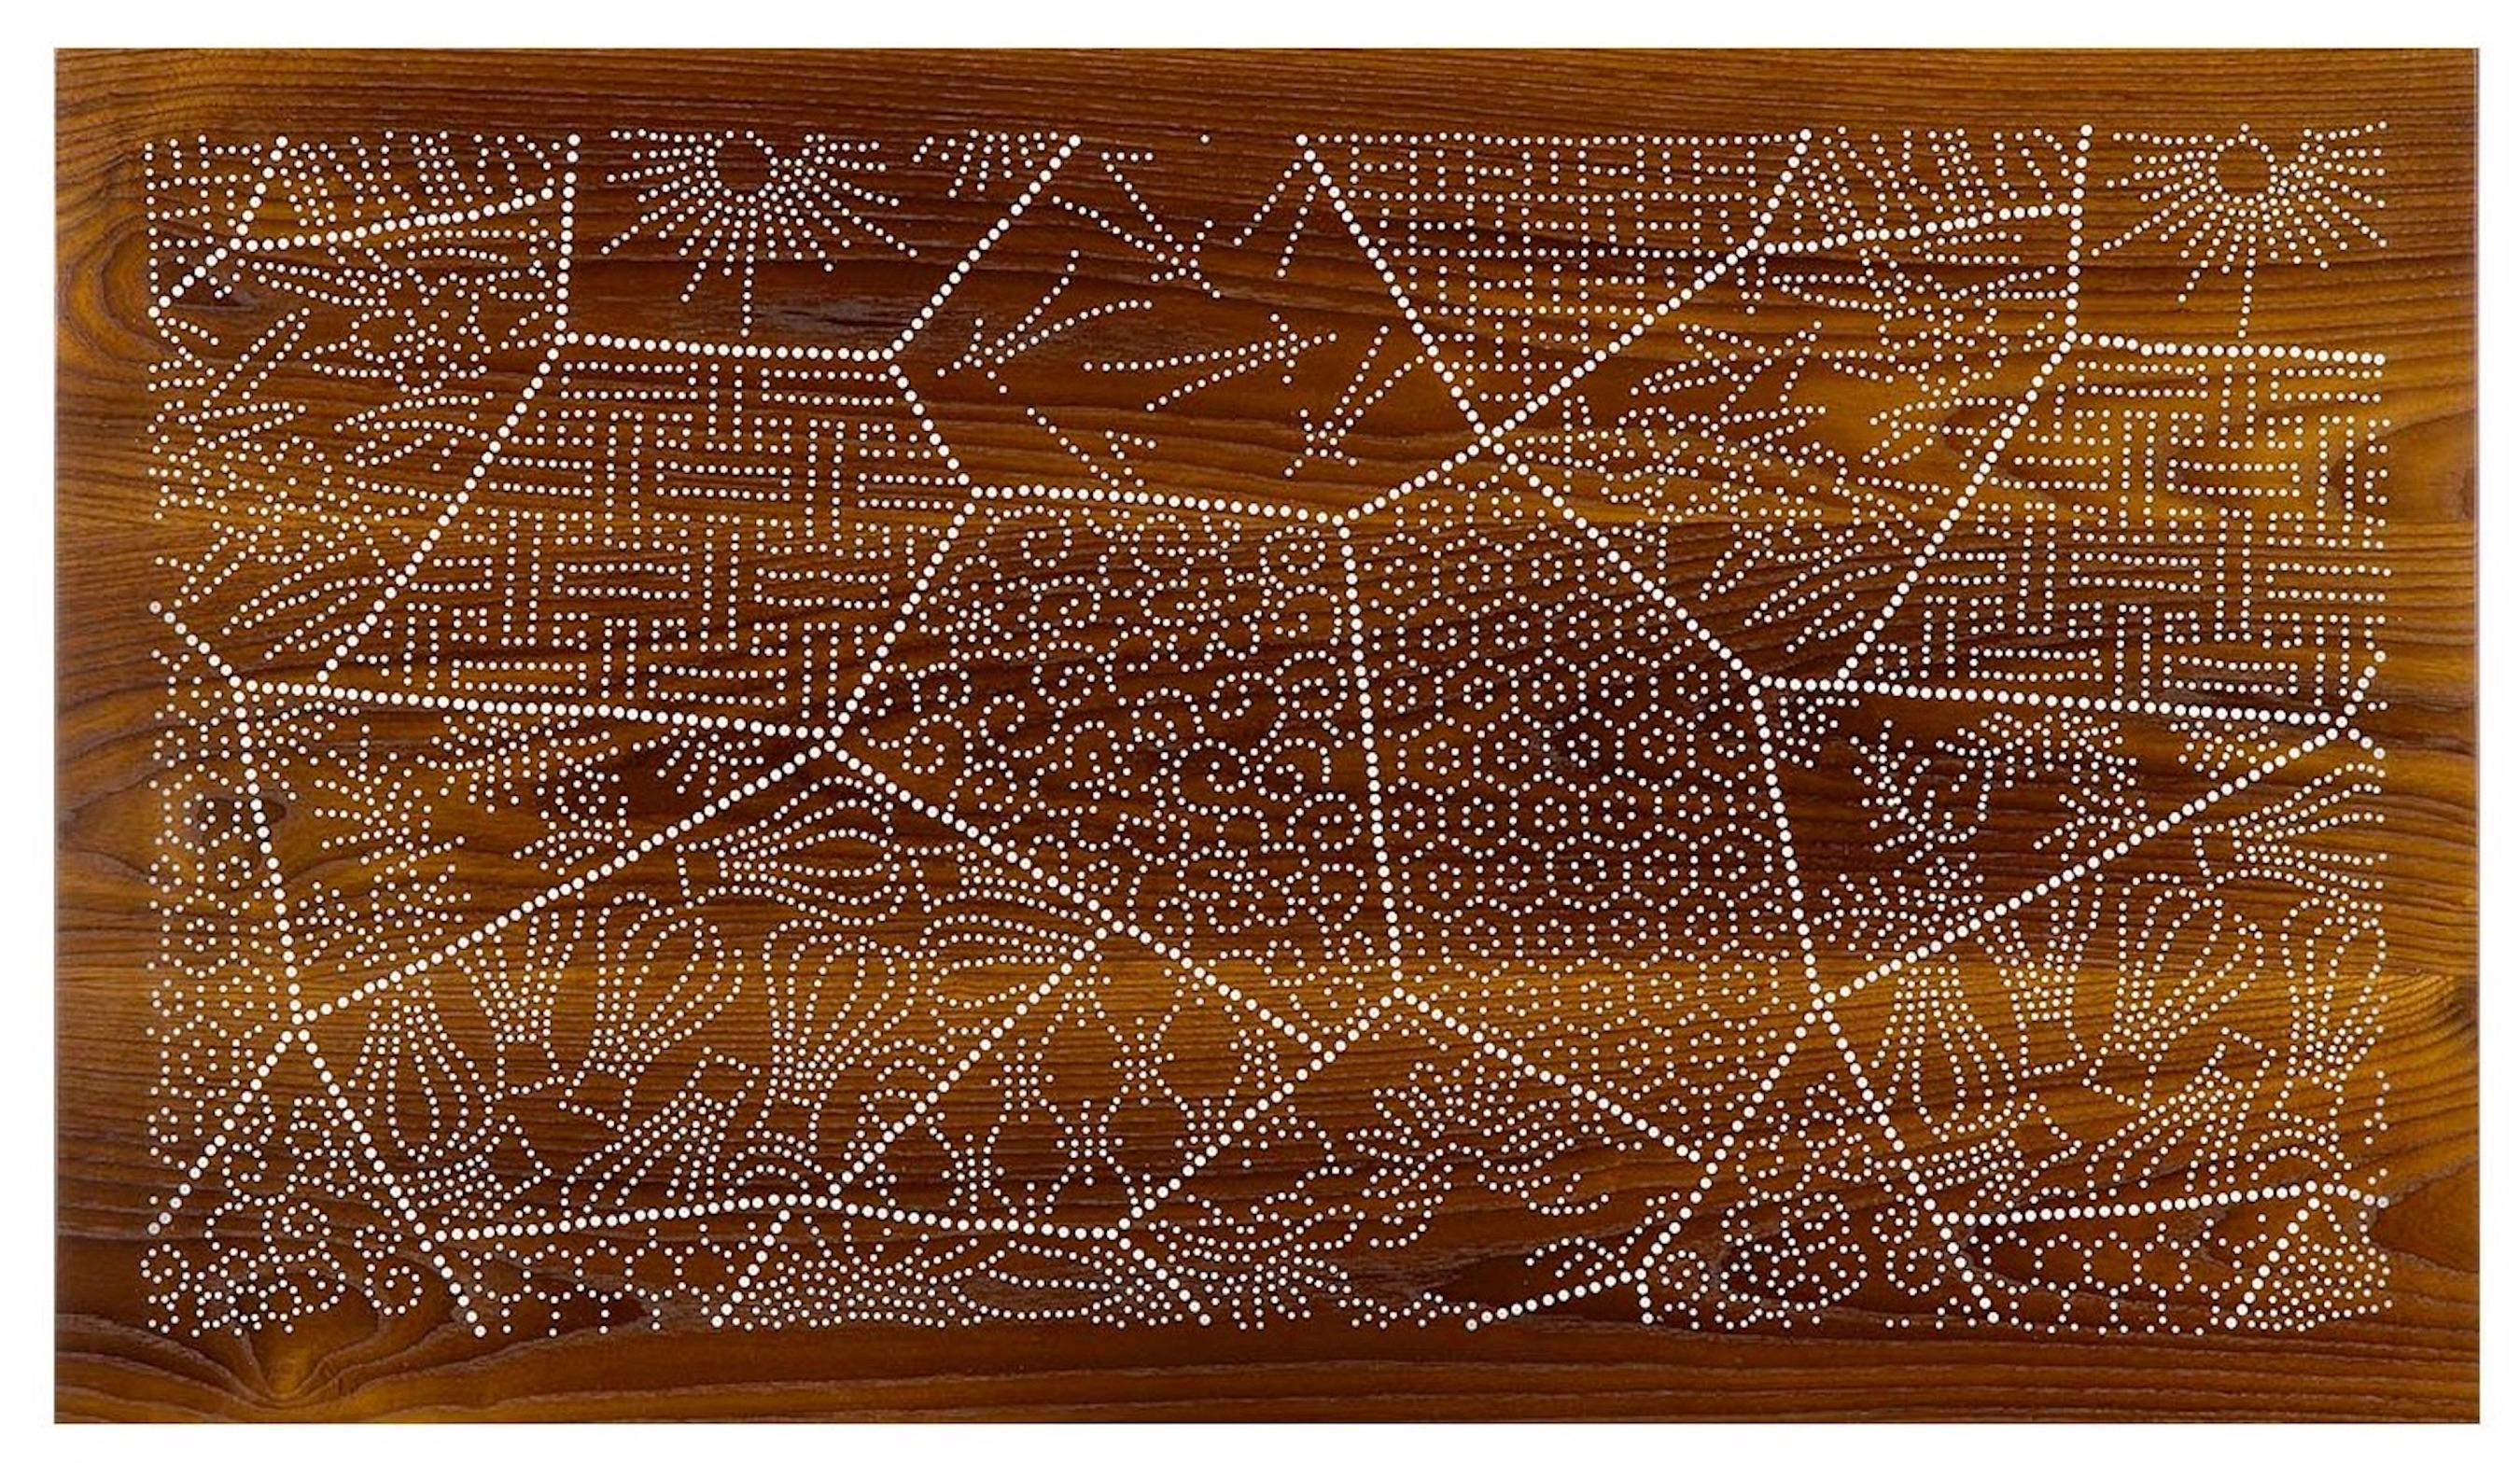 Nail Inlay Wall Piece No. 32 (katagami)  thermally modified ash, nails - Mixed Media Art by Peter Sandback